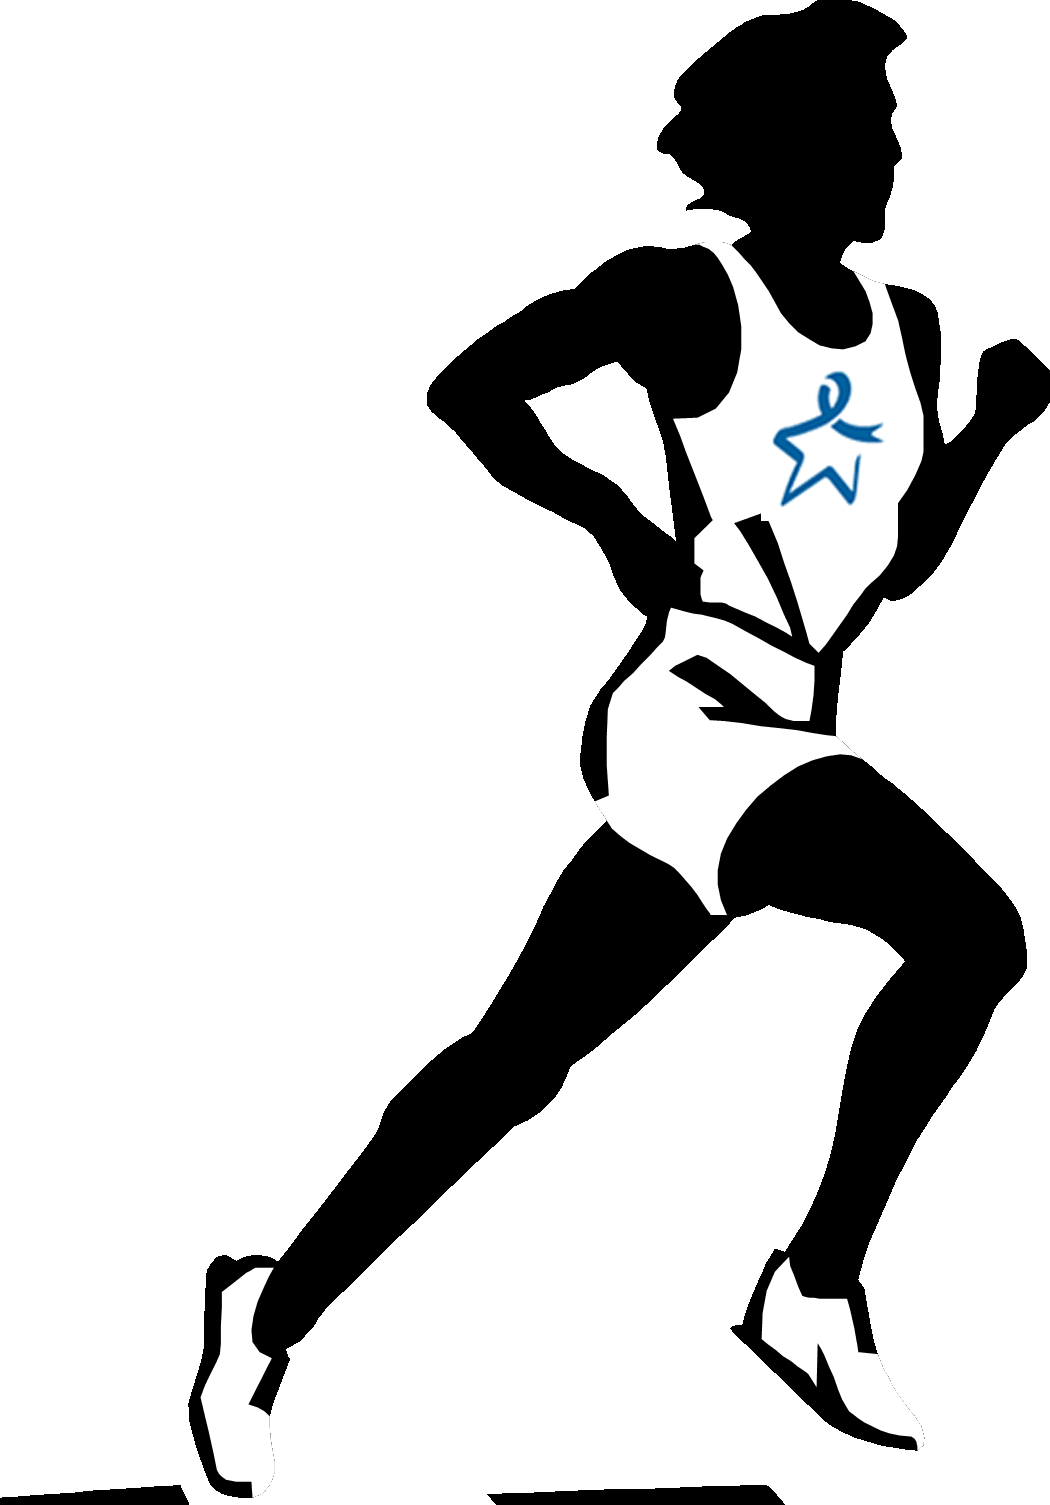 Exercising clipart runner. Cross country clip art